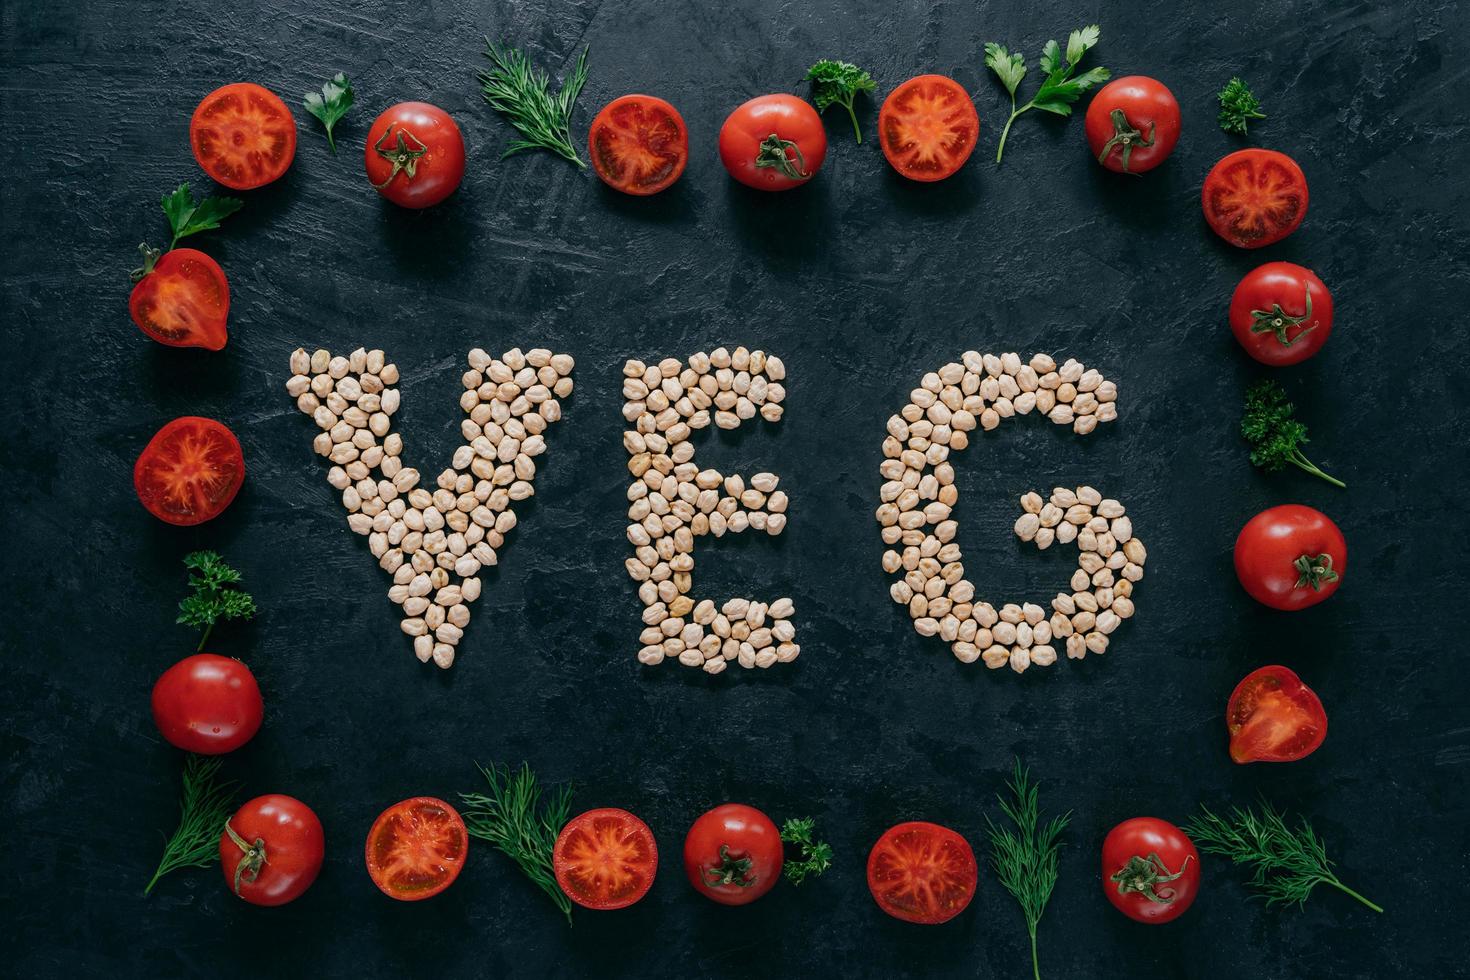 foto do quadro de tomates e letras de grão de bico significando veg. sementes orgânicas dentro do quadro vegetal isolado sobre fundo escuro. vegetarianismo